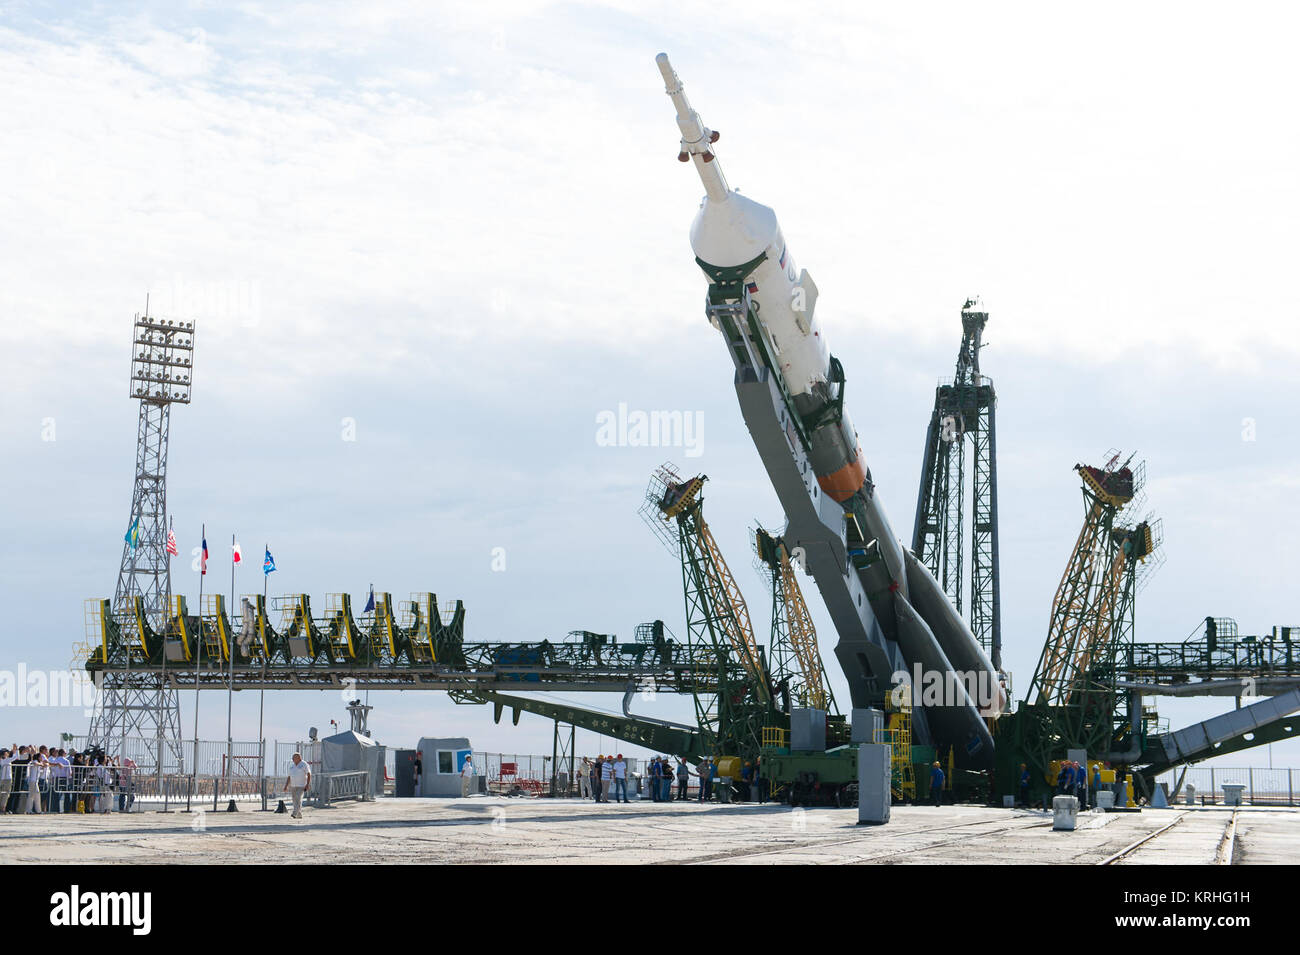 Il Soyuz TMA-17M veicolo spaziale è sollevato in posizione sulla rampa di lancio Lunedì, 20 luglio 2015 presso il cosmodromo di Baikonur in Kazakistan. Lancio del razzo Soyuz è prevista per il mese di luglio 23 Cosmodromo di tempo e porterà Expedition 44 Soyuz Commander Oleg Kononenko di l'agenzia Spaziale Federale Russa Roscosmos (), tecnico di volo Kjell Lindgren della NASA e tecnico di volo Kimiya Yui della Japan Aerospace Exploration Agency (JAXA) in orbita per iniziare i loro cinque mesi di missione sulla Stazione spaziale internazionale. Photo credit: (NASA/Aubrey Gemignani) Expedition 44 Implementazione (201507200019HQ) Foto Stock